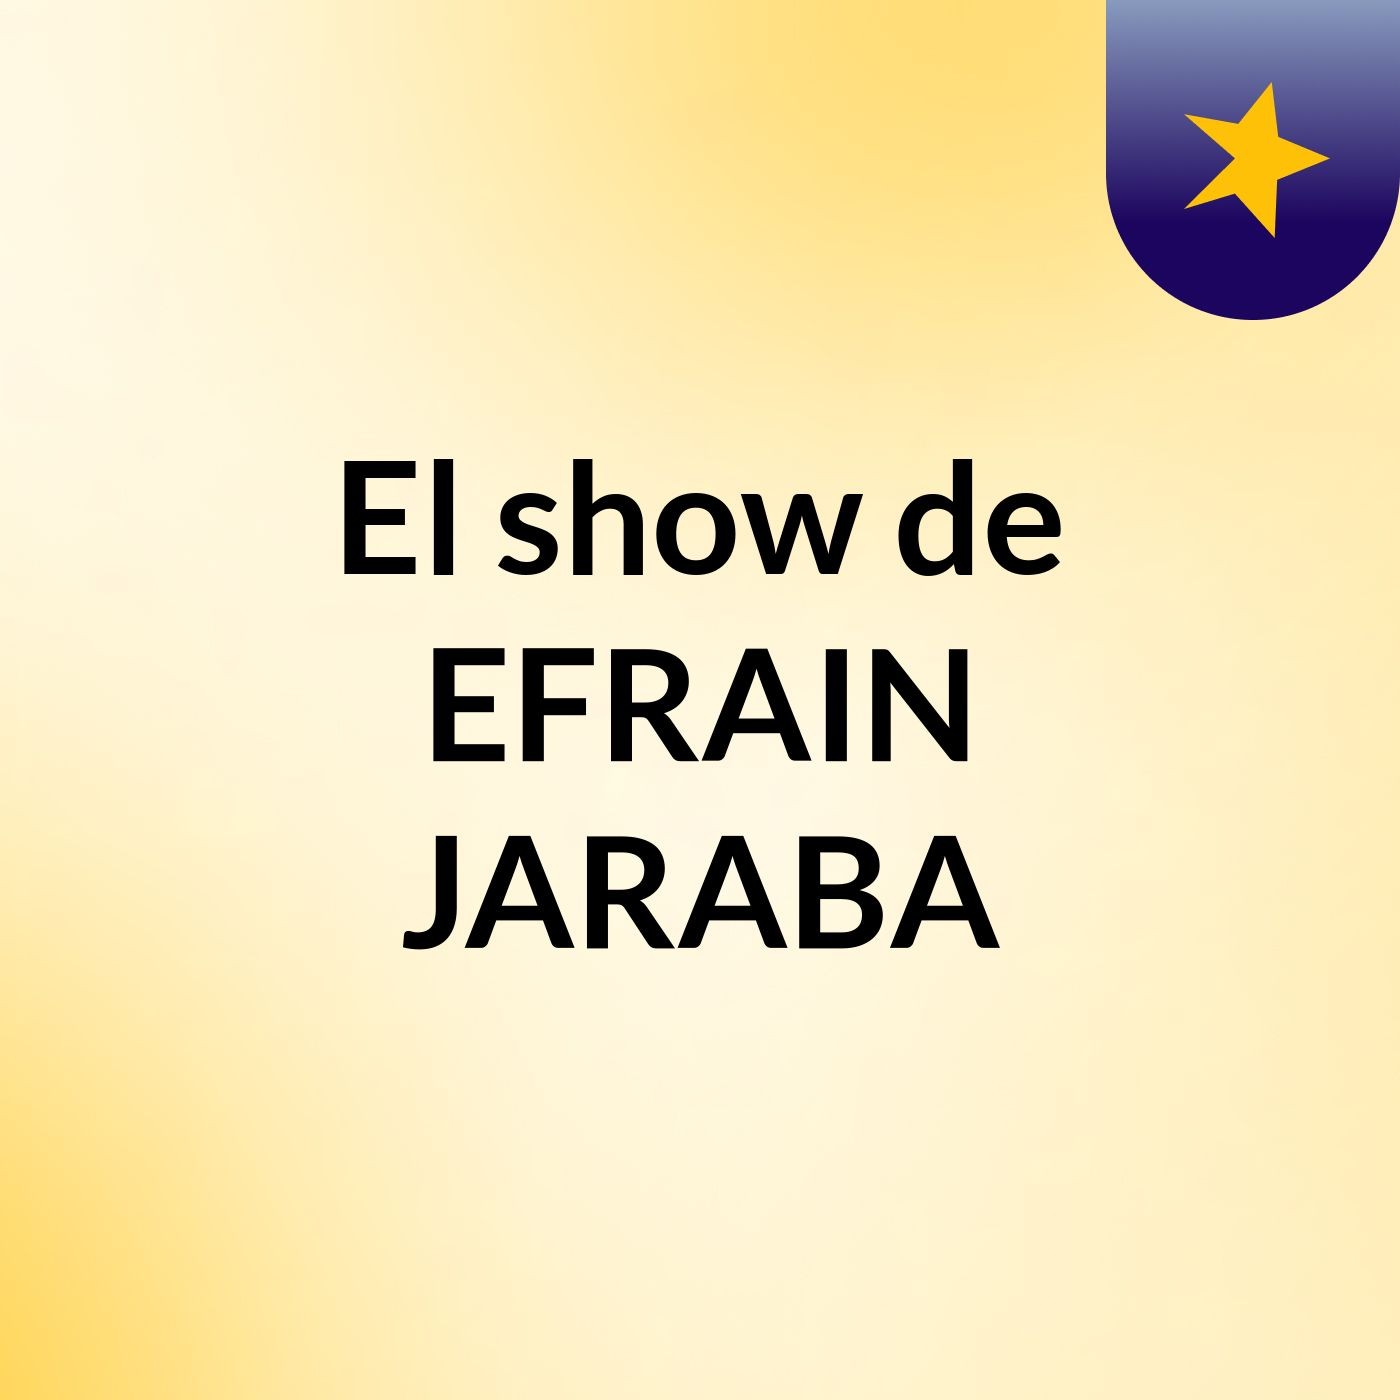 El show de EFRAIN JARABA